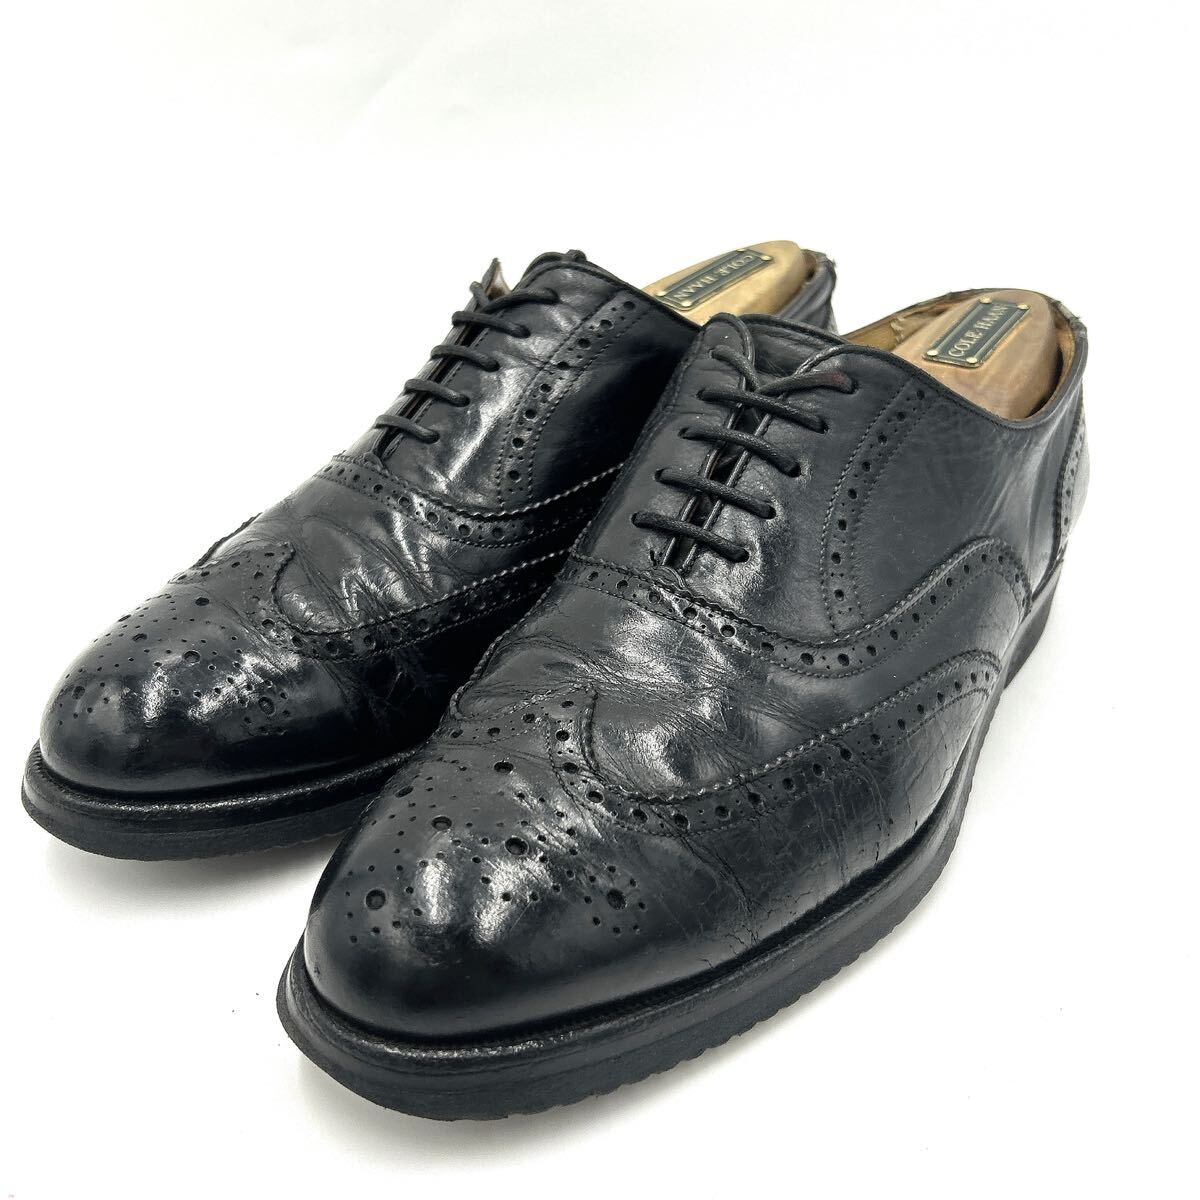 E ■ 極上レザー使用 '人気モデル' REGAL リーガル 本革 ビジネスシューズ 革靴 26cm 紳士靴 ウィングチップ 内羽根式 メダリオン BLACK の画像1